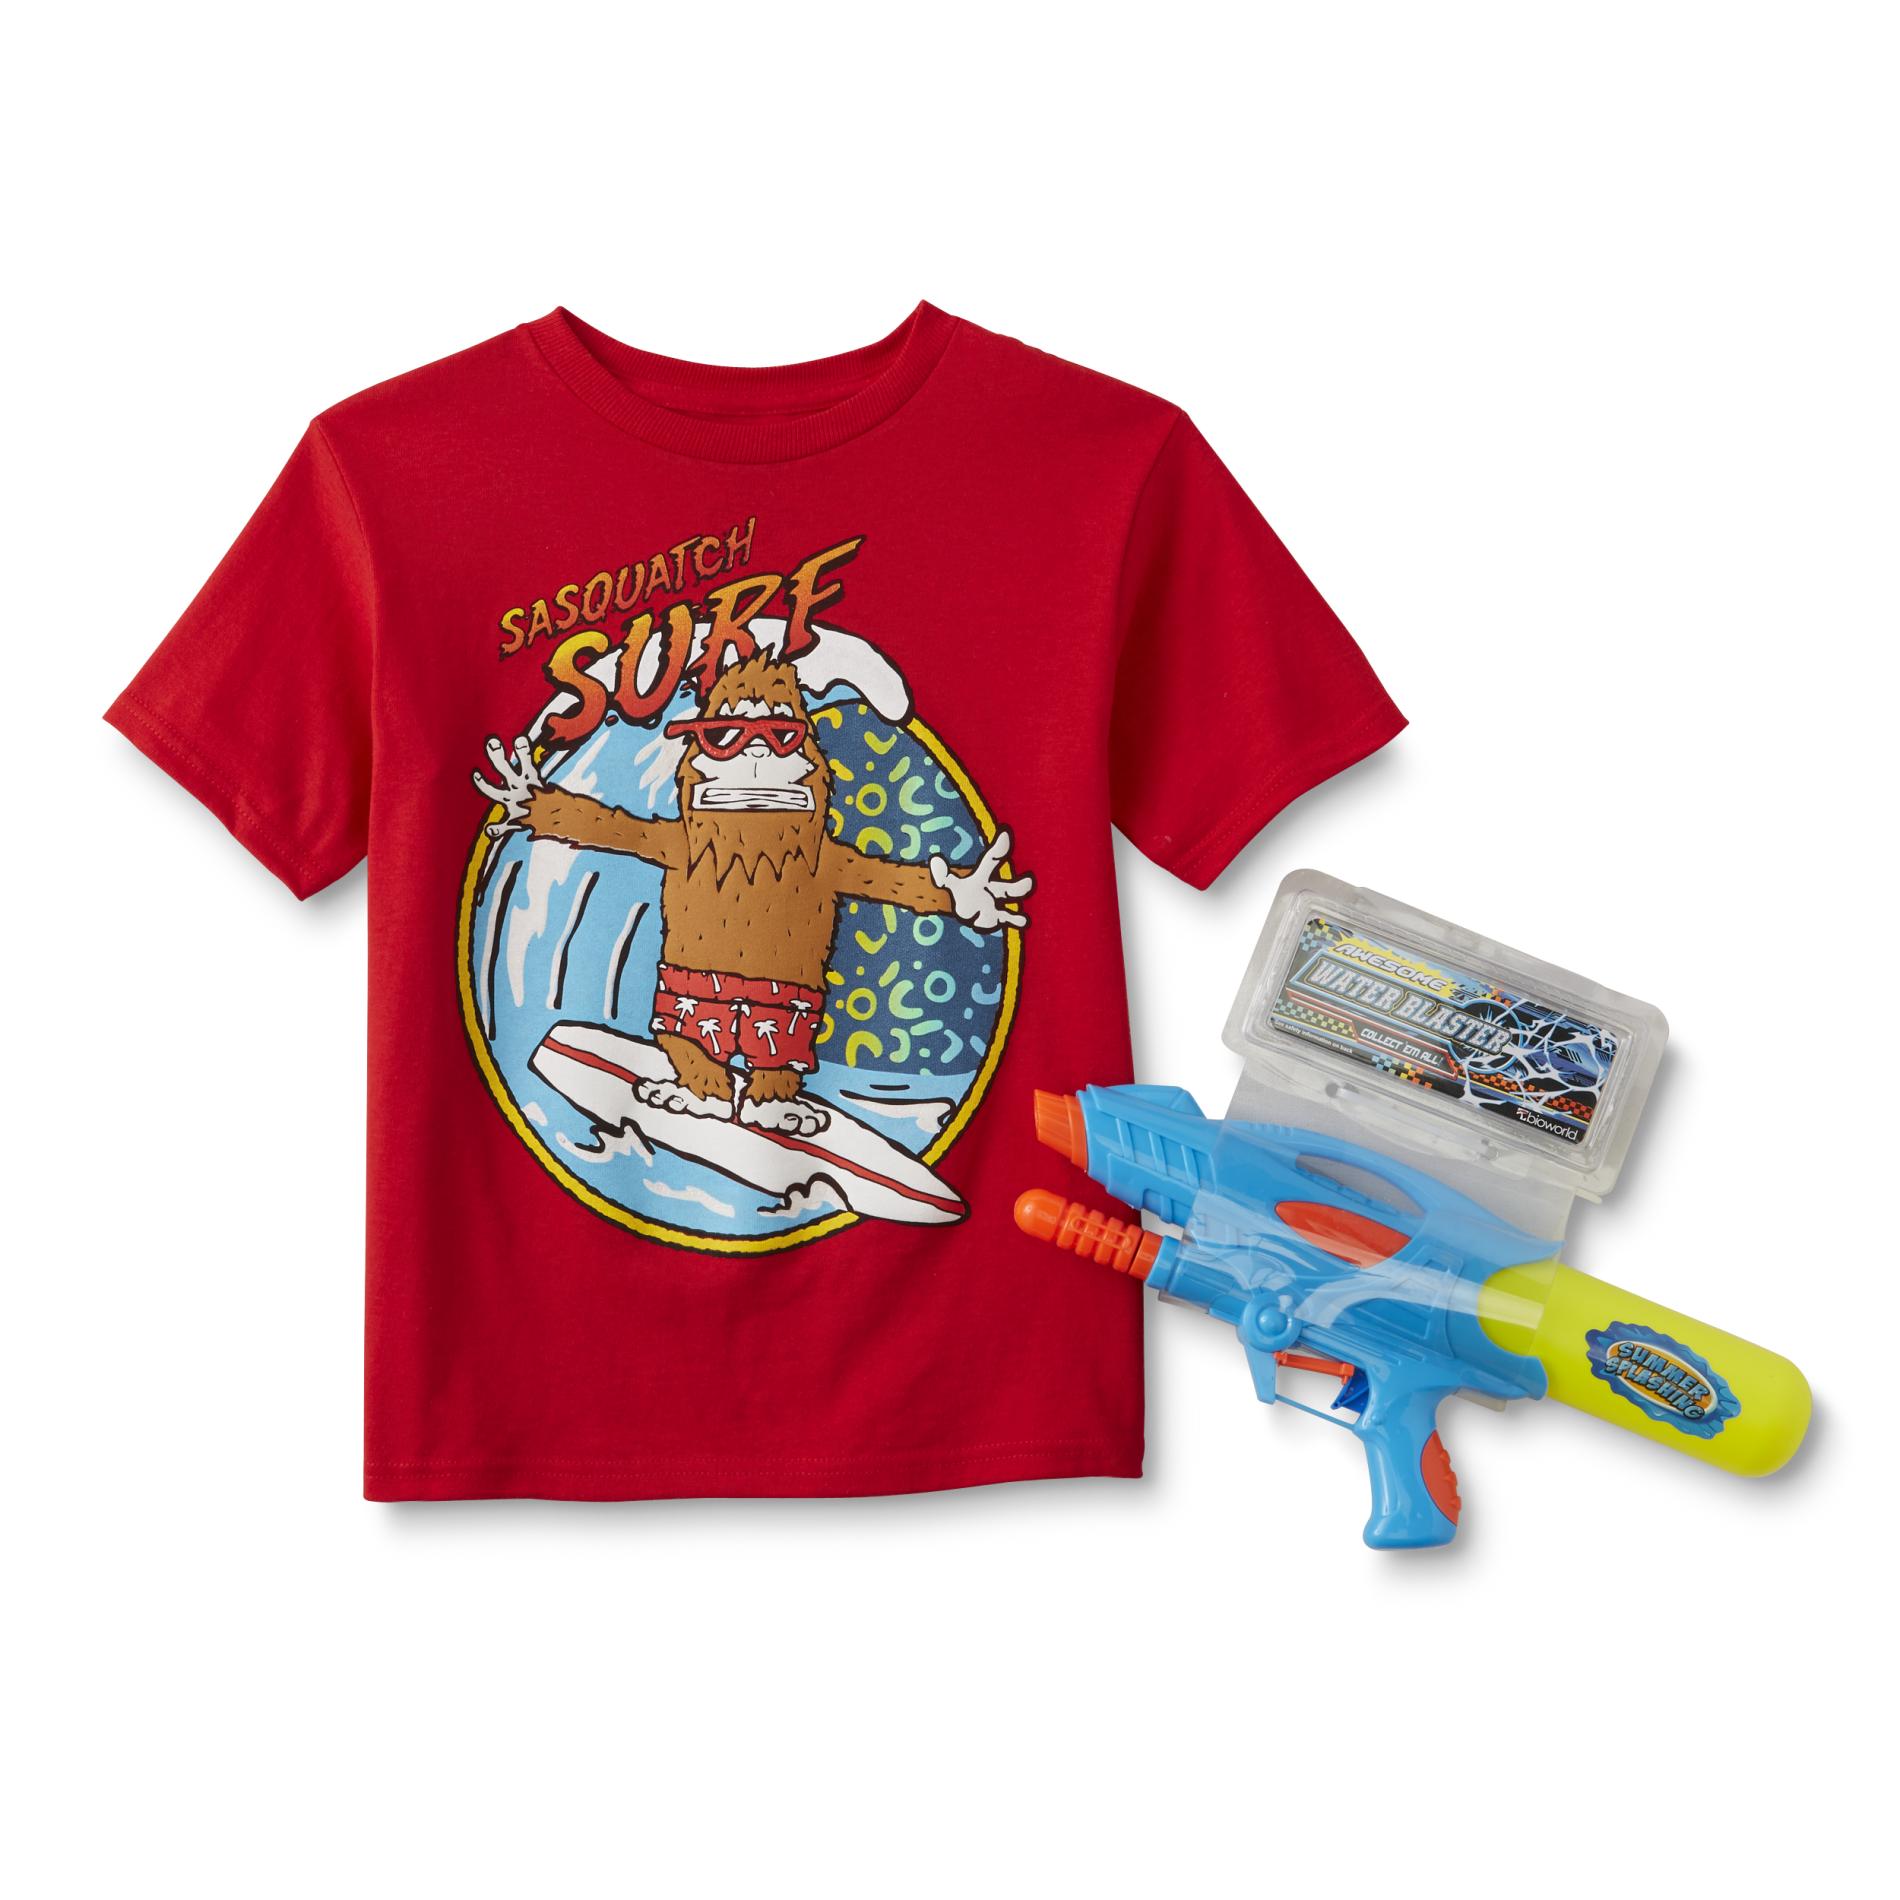 Boy's T-Shirt & Water Blaster - Sasquatch Surf